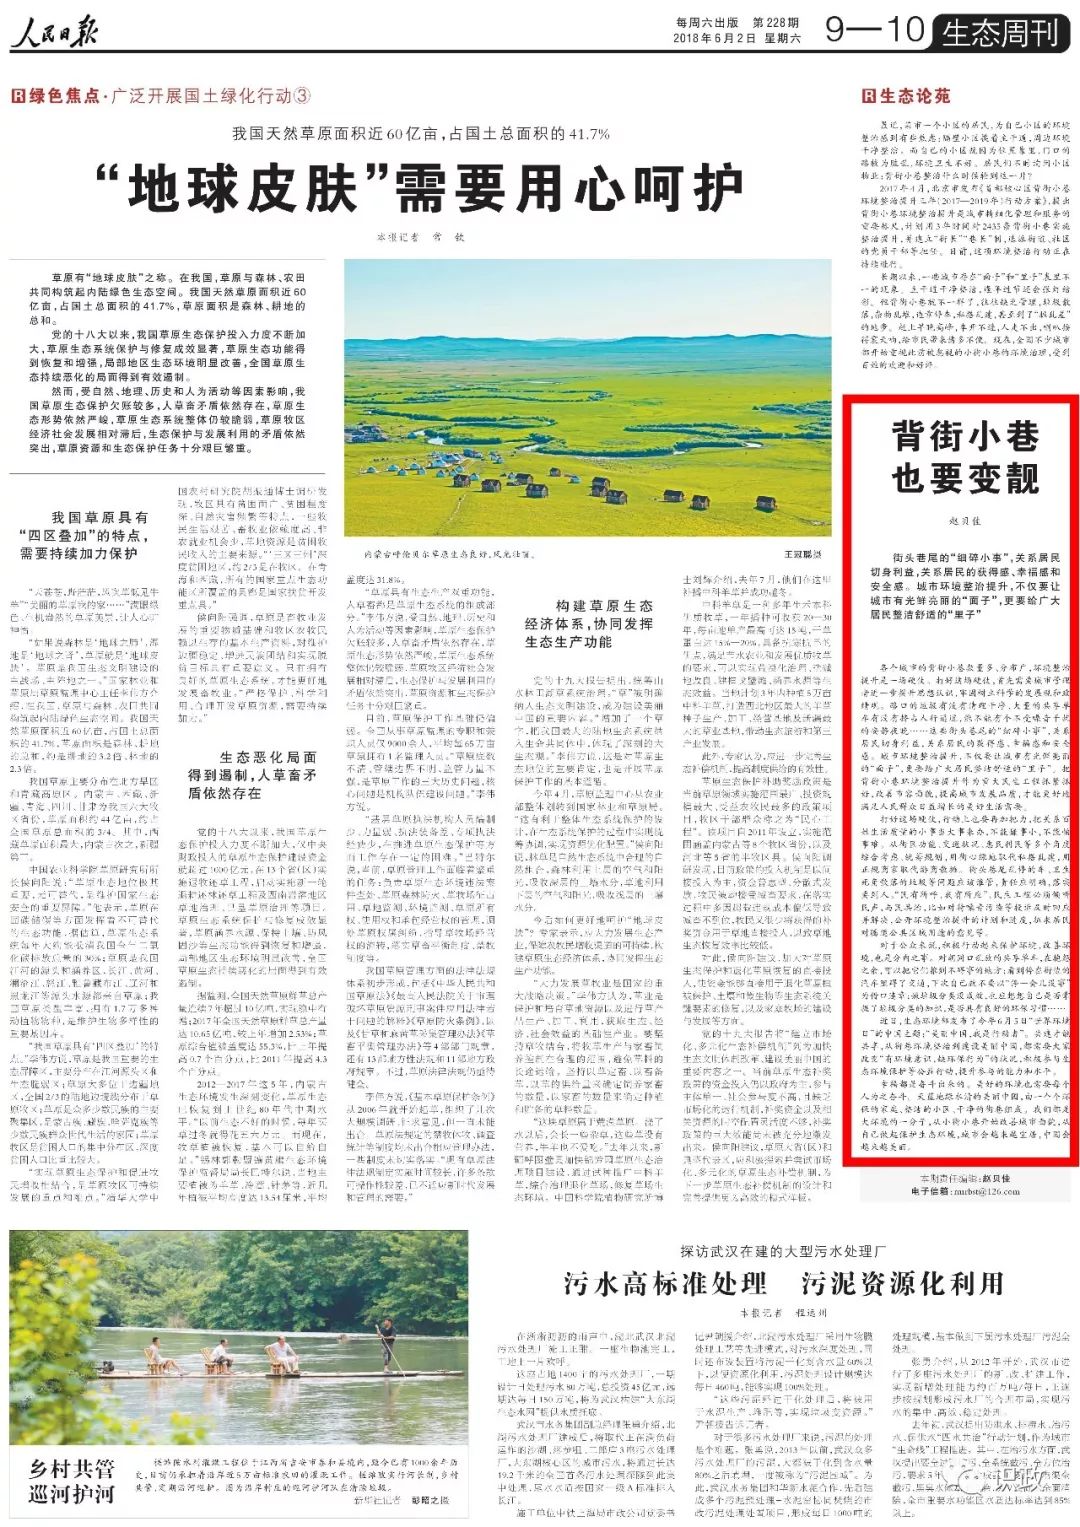 党报的报道 引起北京市委书记蔡奇一次明察暗访